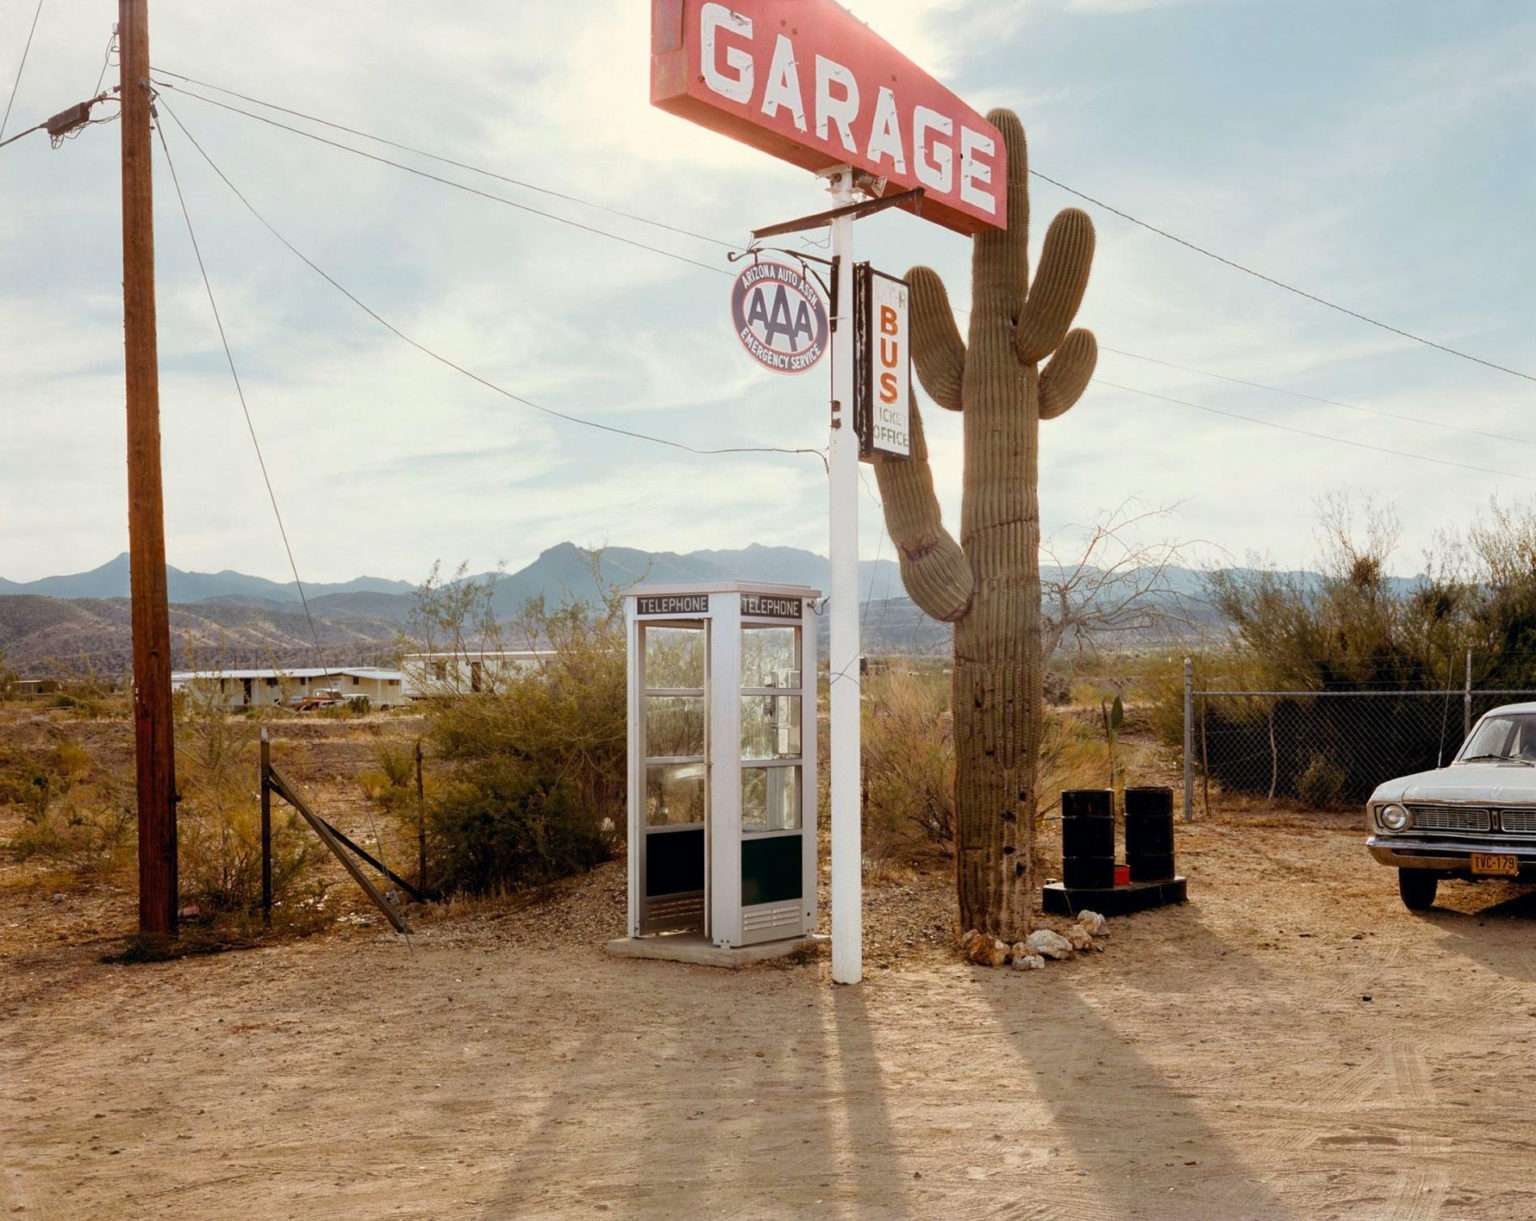 Photo d'un paysage désertique avec une cabine téléphonique, un grand cactus et un panneau "Garage". Une vieille voiture est garée à côté.